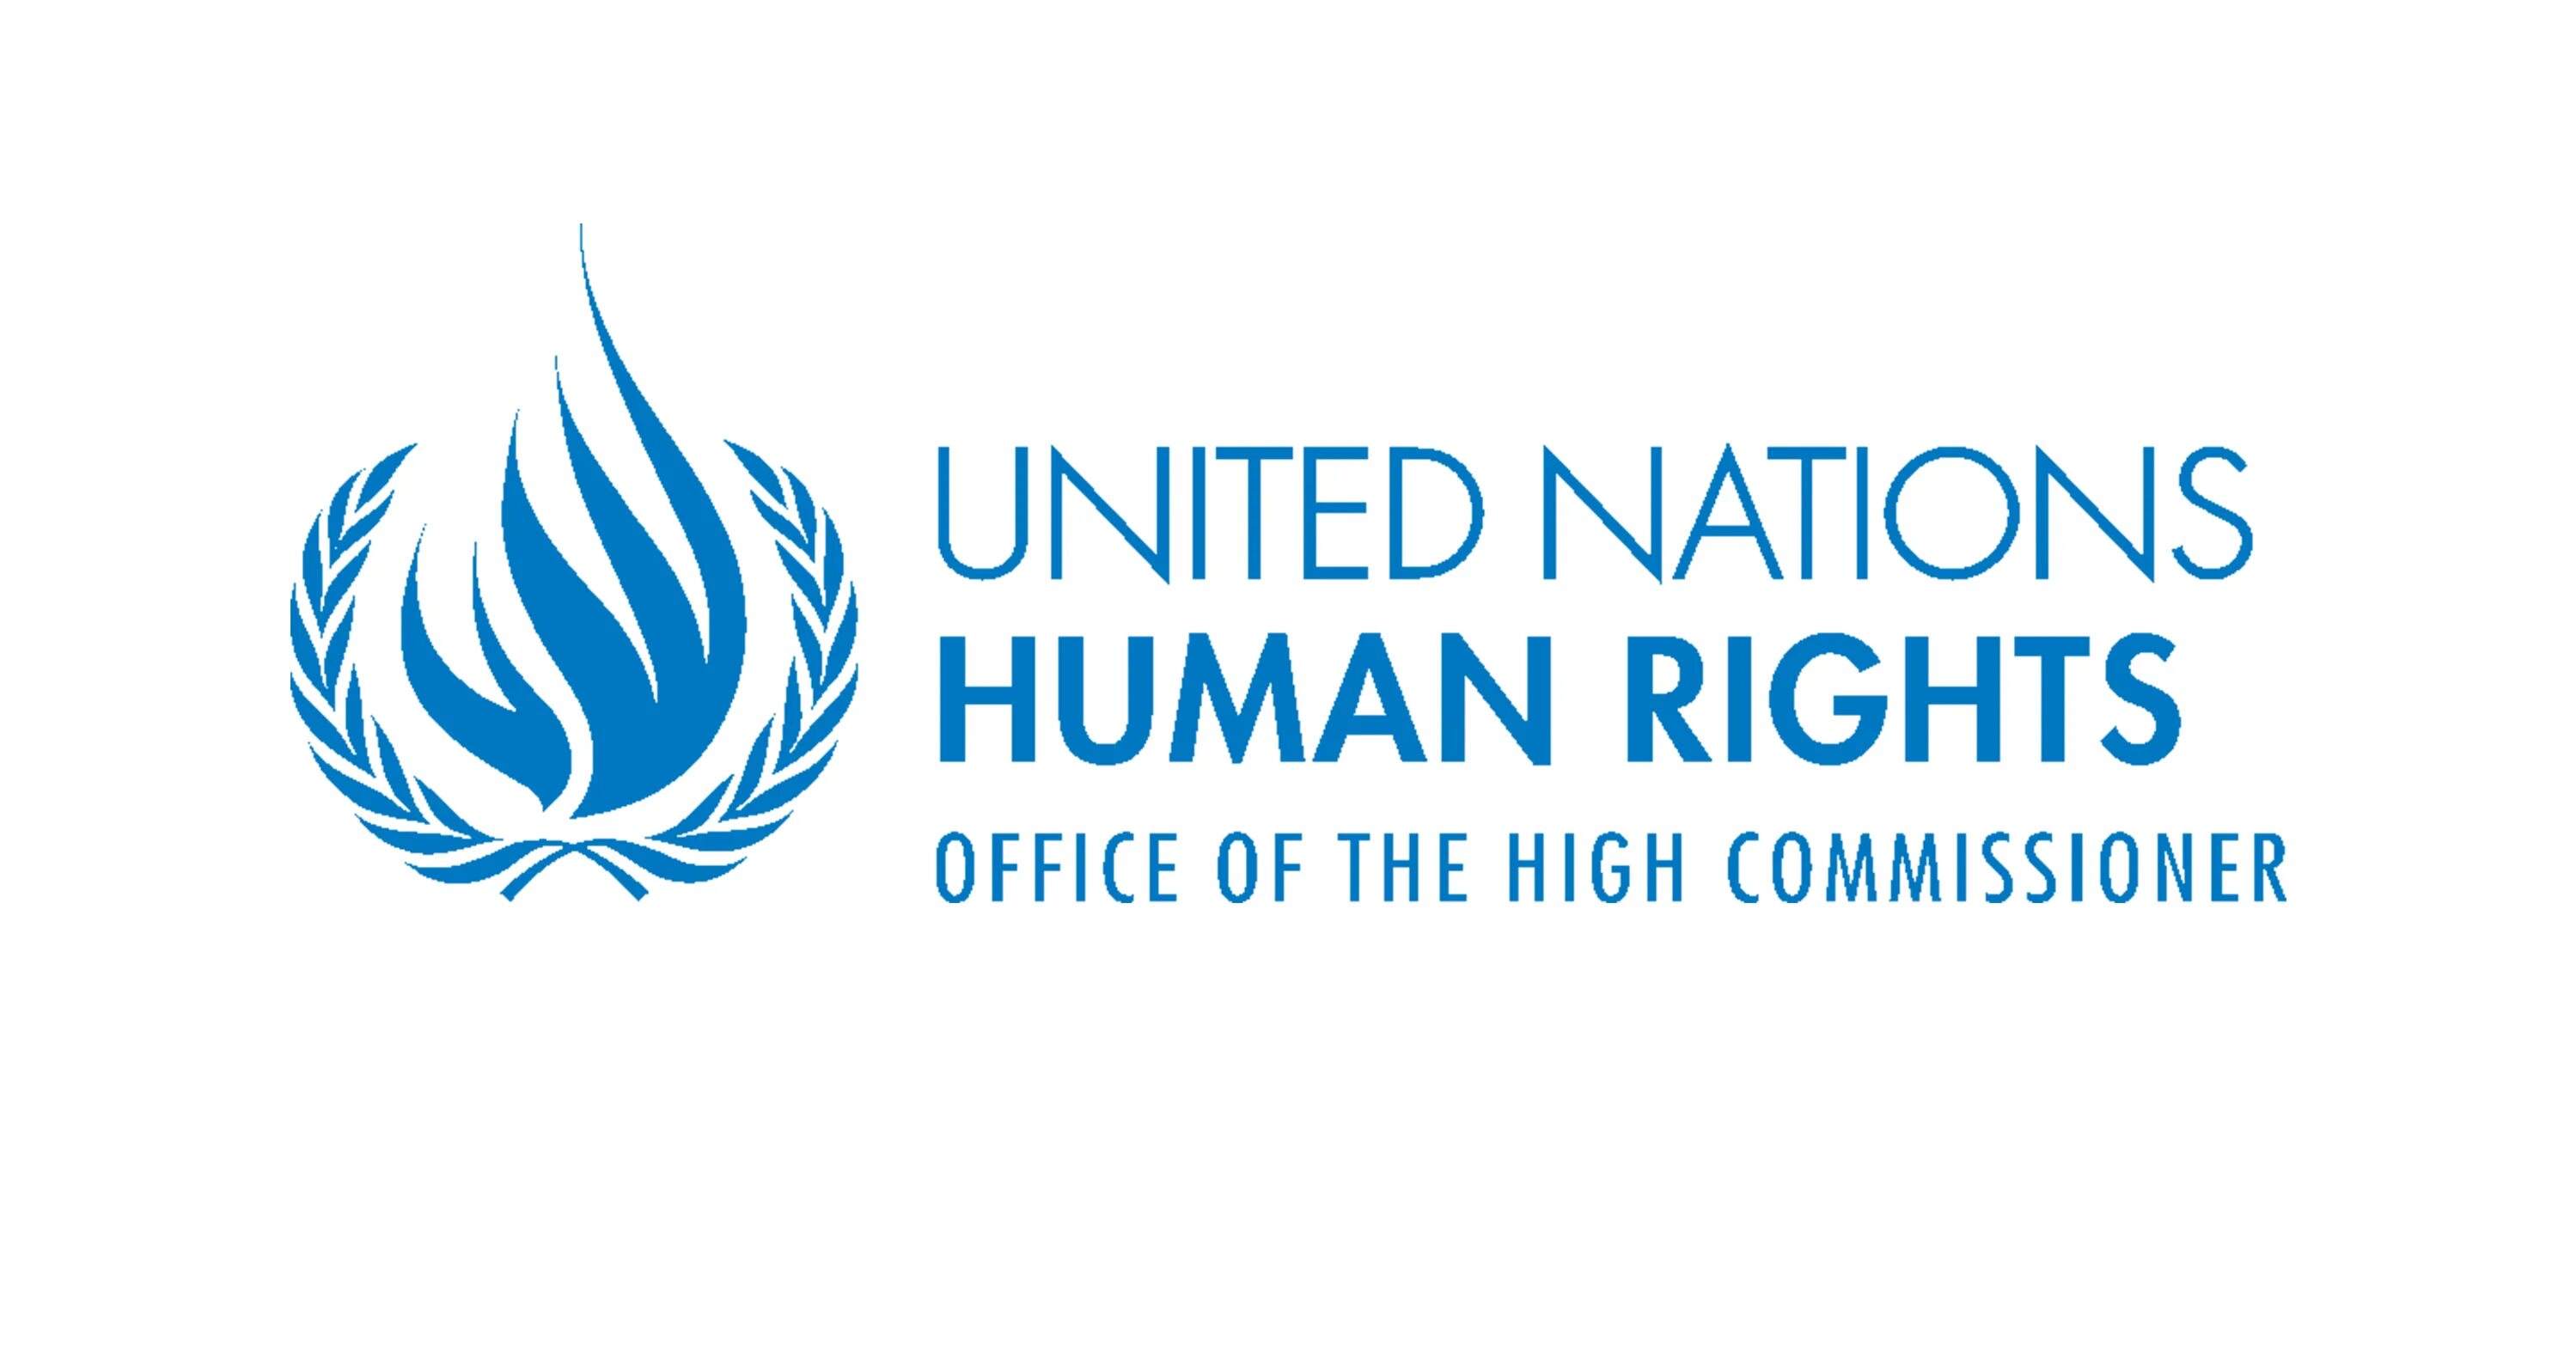 Управление комиссара оон. Верховный комиссар ООН по правам человека эмблема. Совет ООН по правам человека лого. Управление Верховного комиссара ООН.